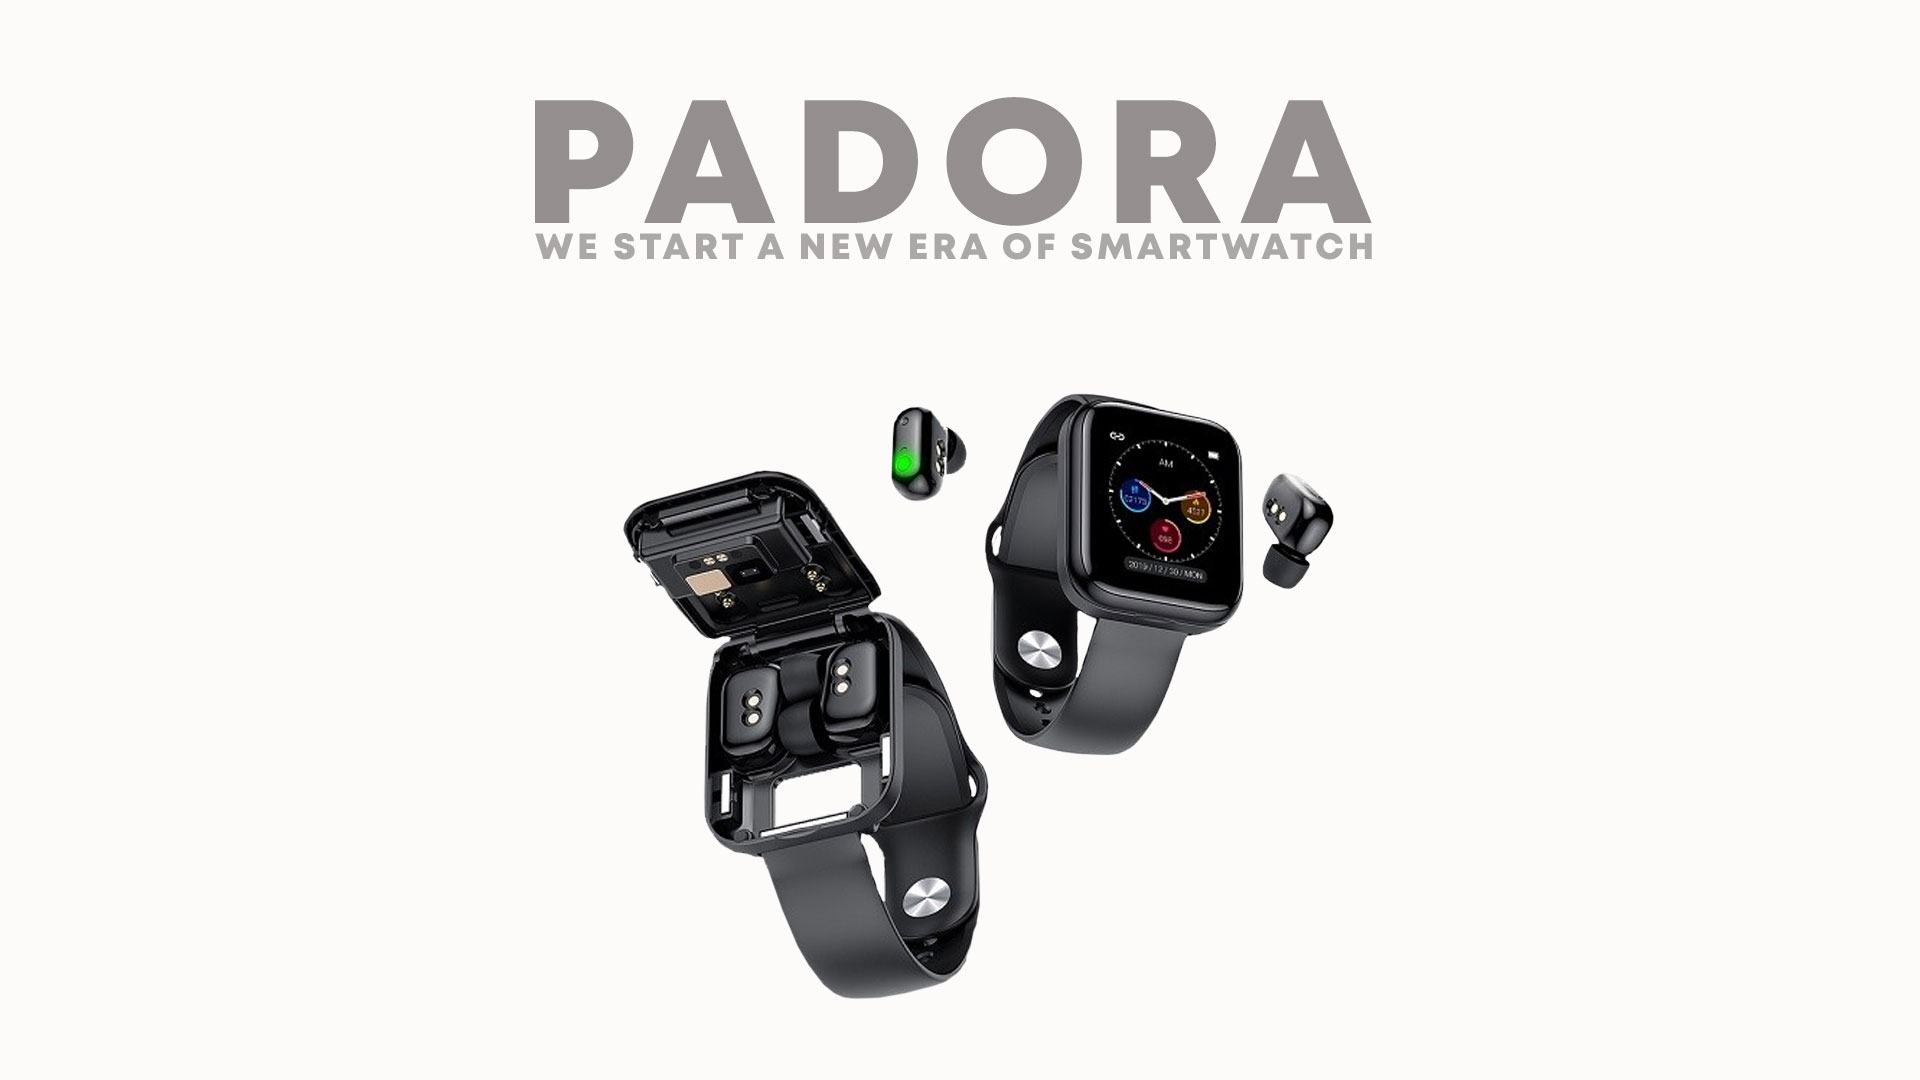 PADORA – 2 in 1 – Smartwatch earbuds